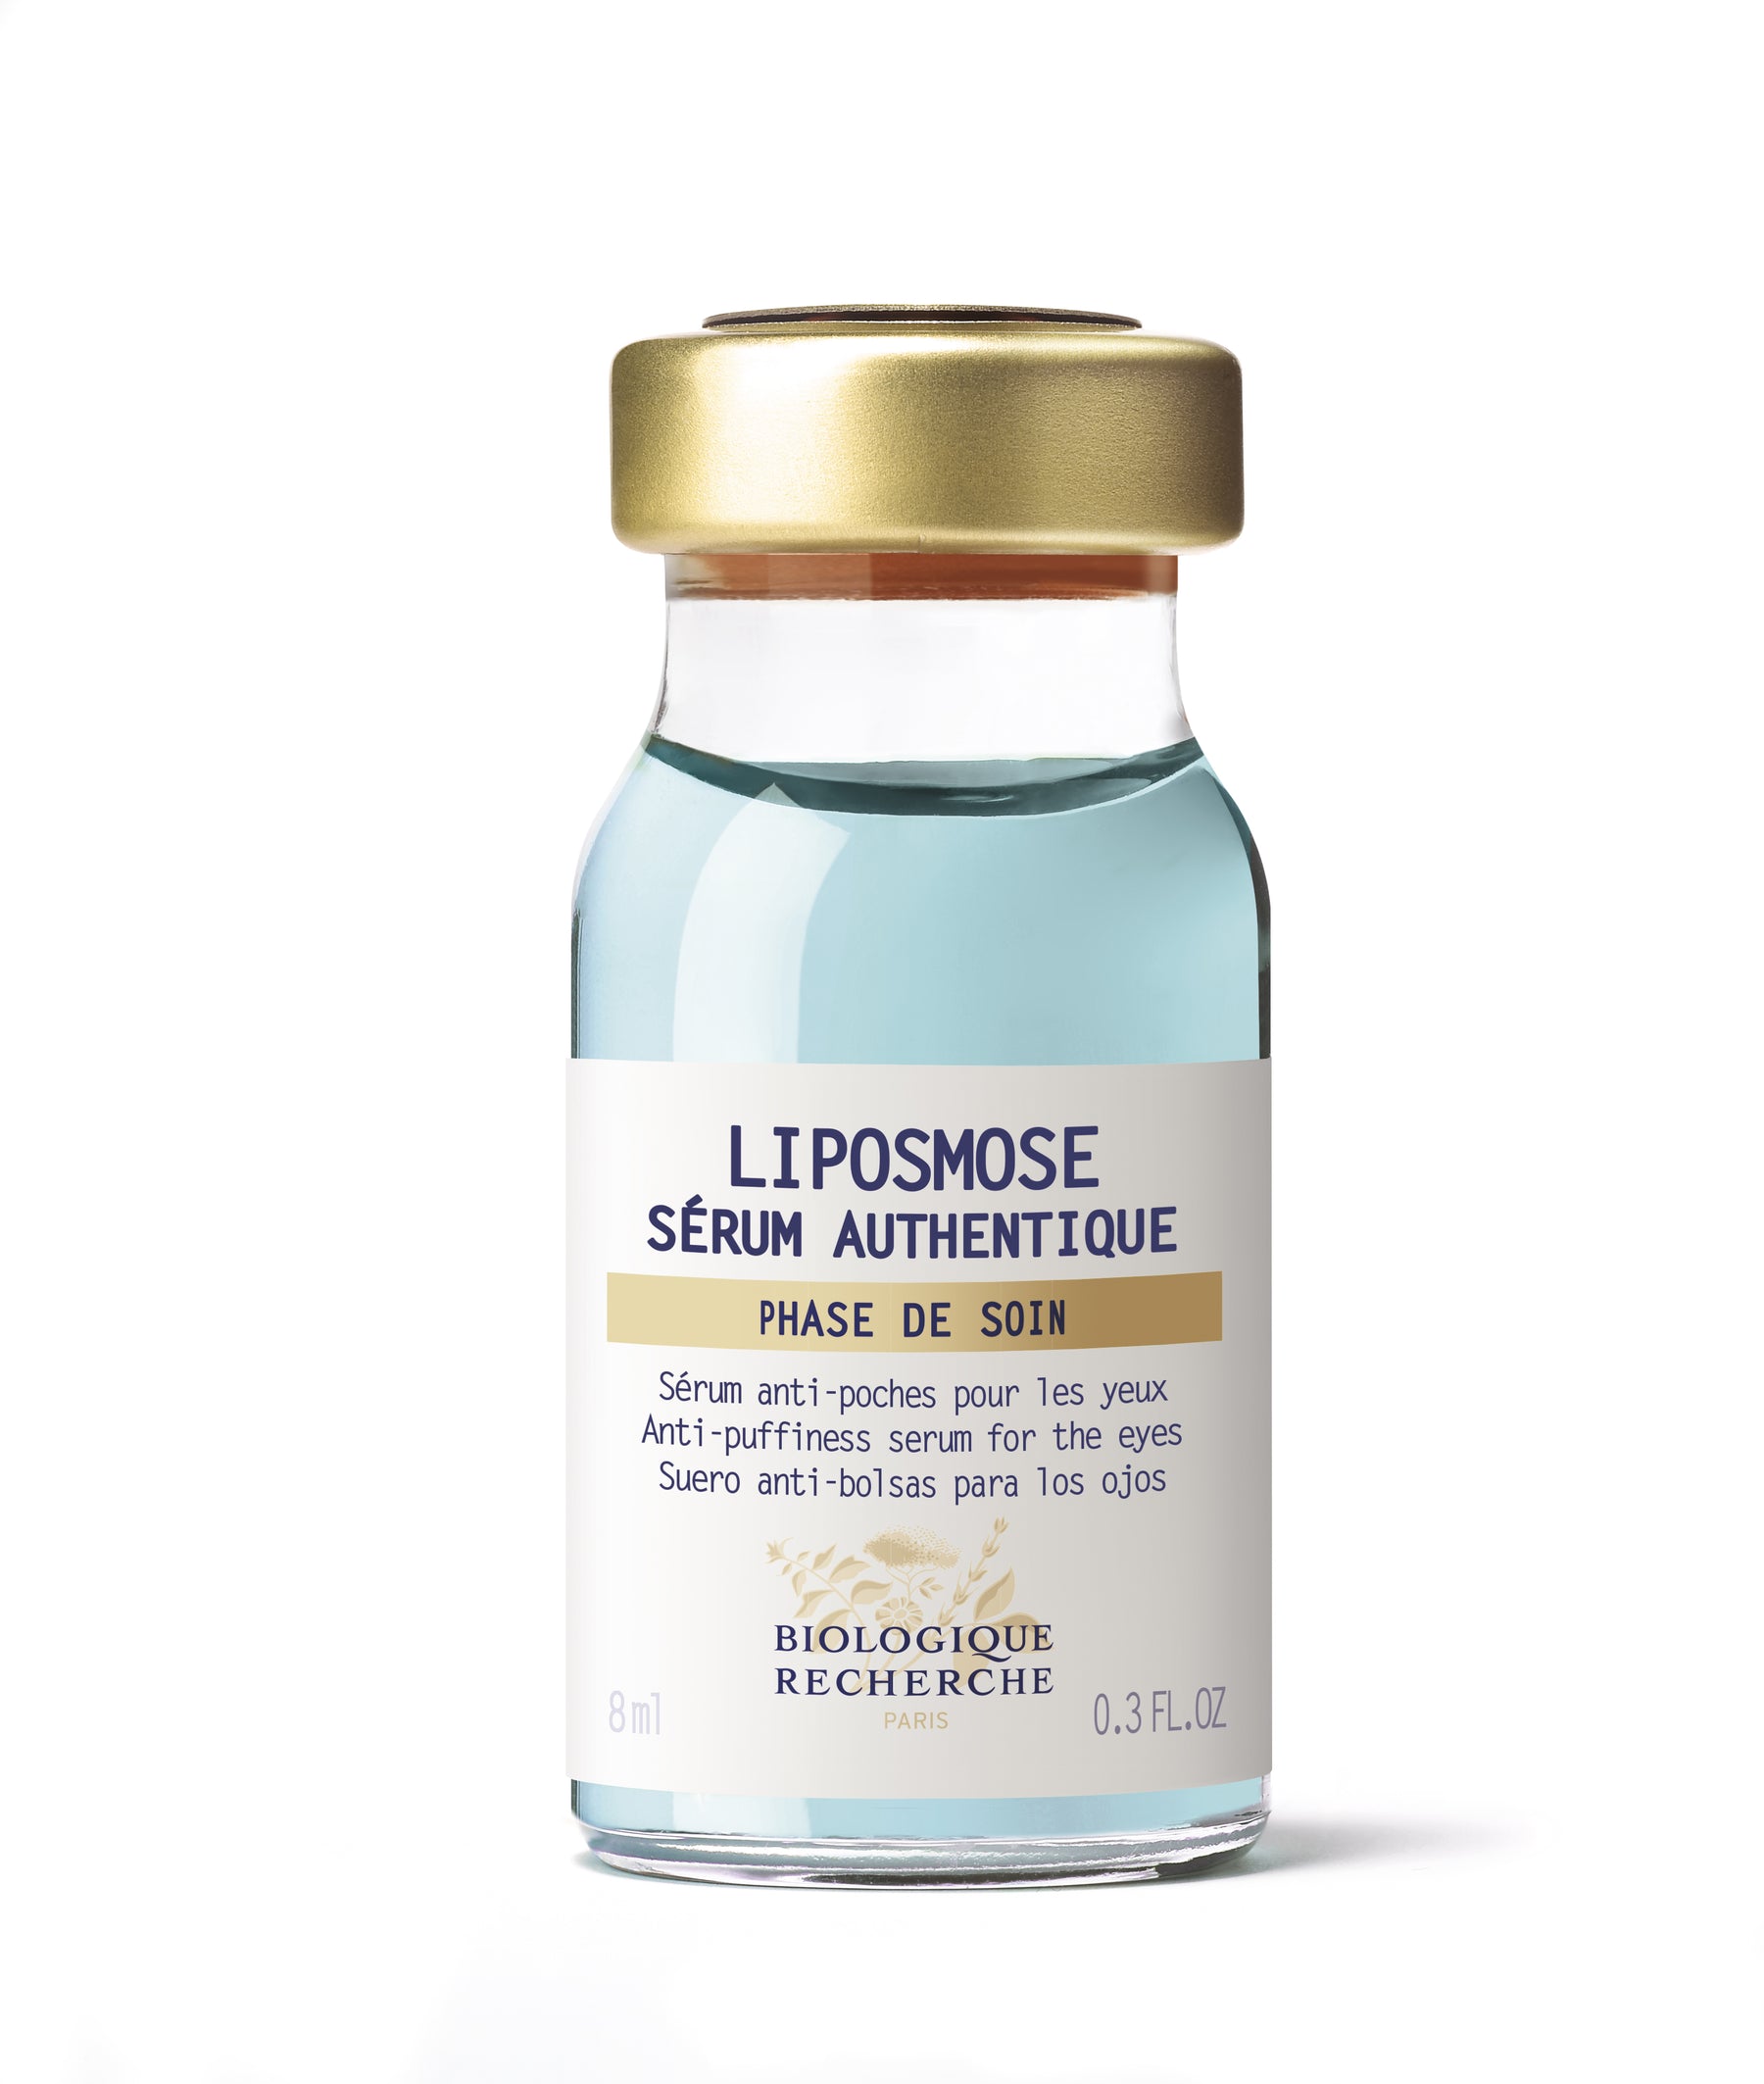 Serum Liposmose -- Quintessential Serum ** Anti-Puffiness Eye Serum